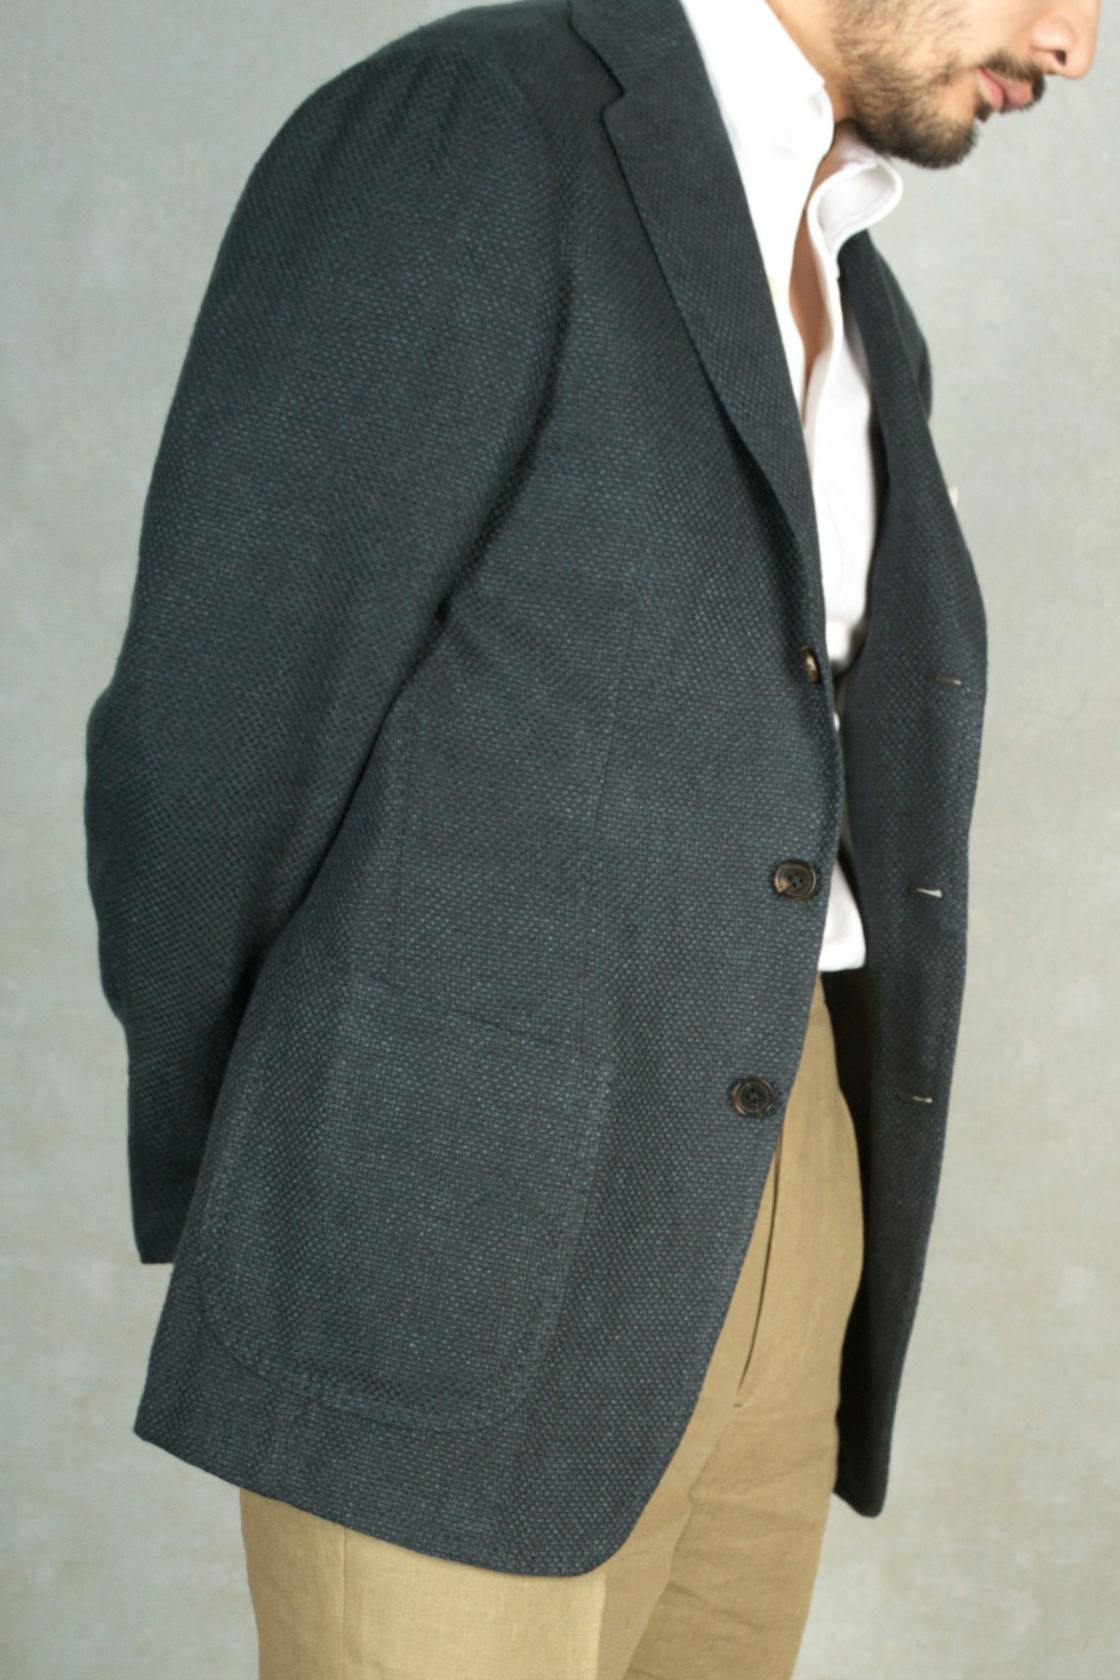 Ring Jacket Meister 254HF Grey Green Linen/Wool/Silk Weave Sport Coat